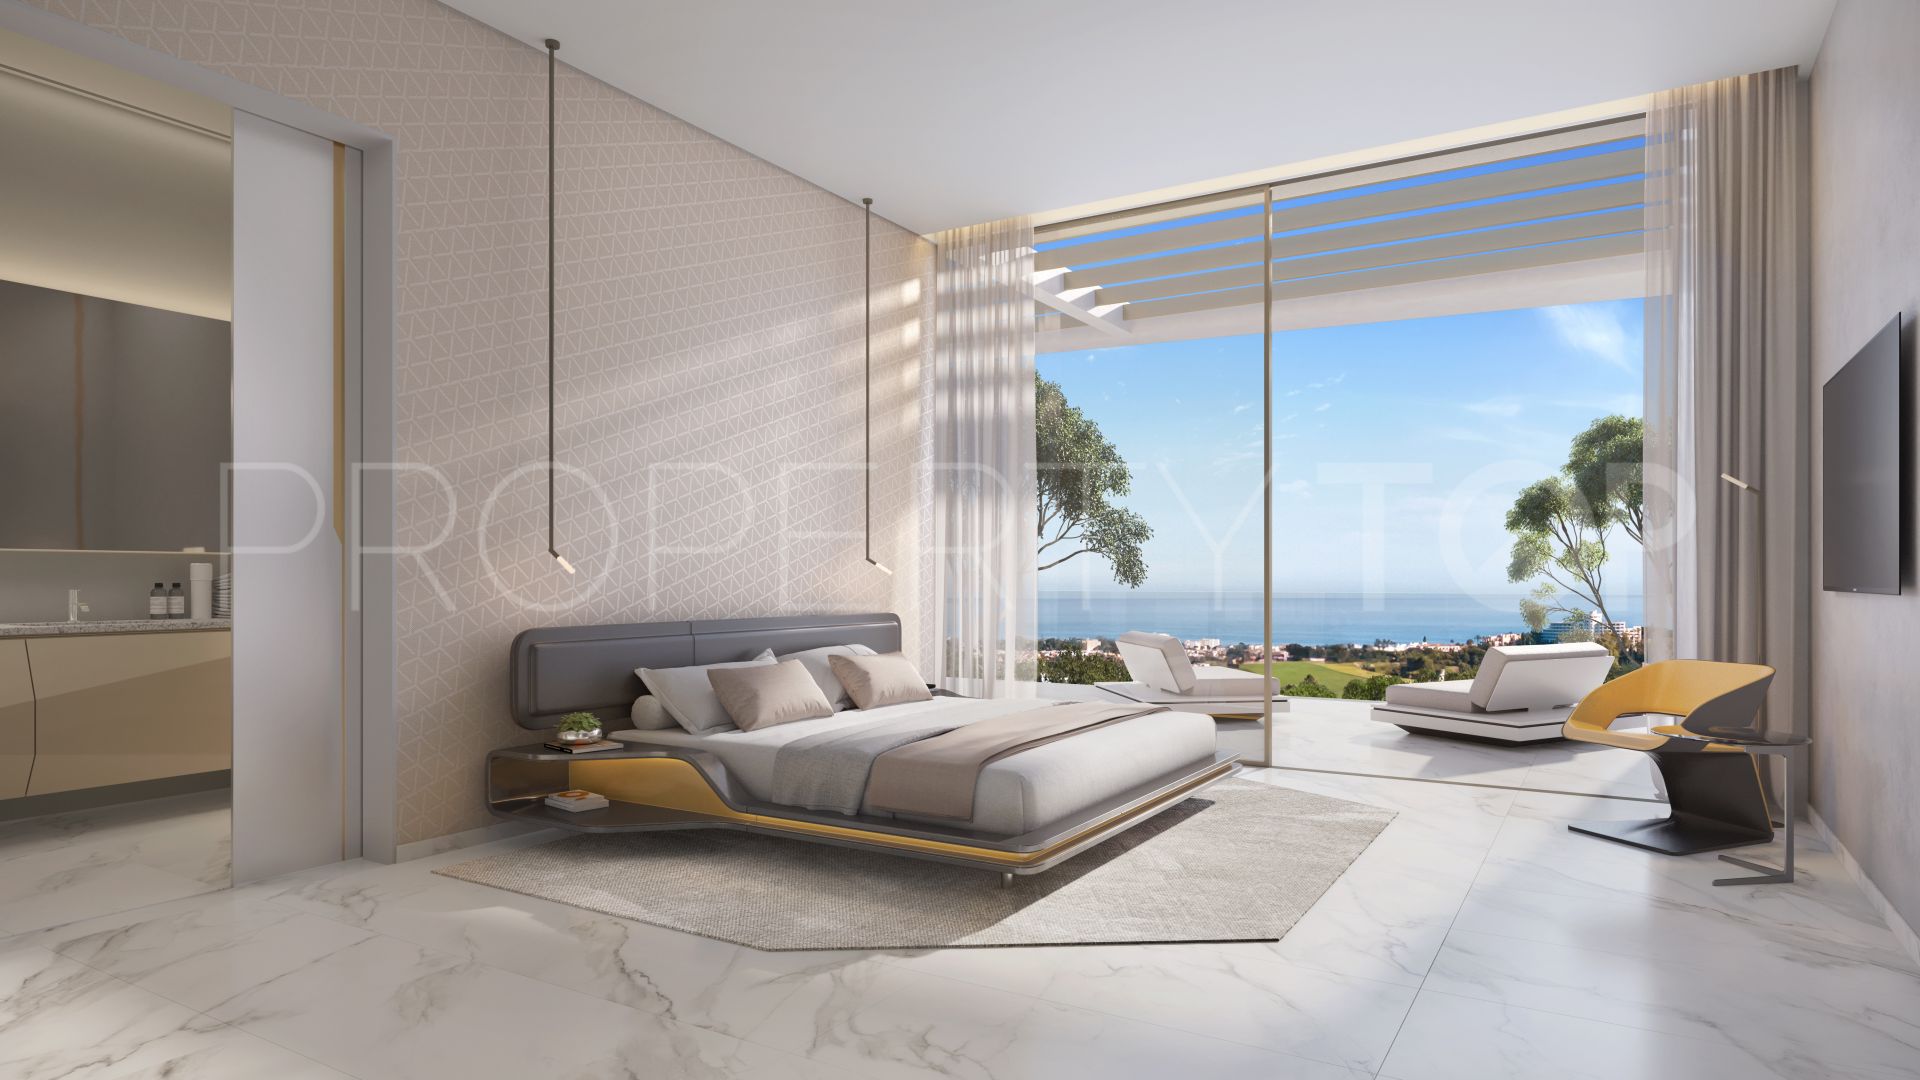 5 bedrooms Mirador del Paraiso villa for sale